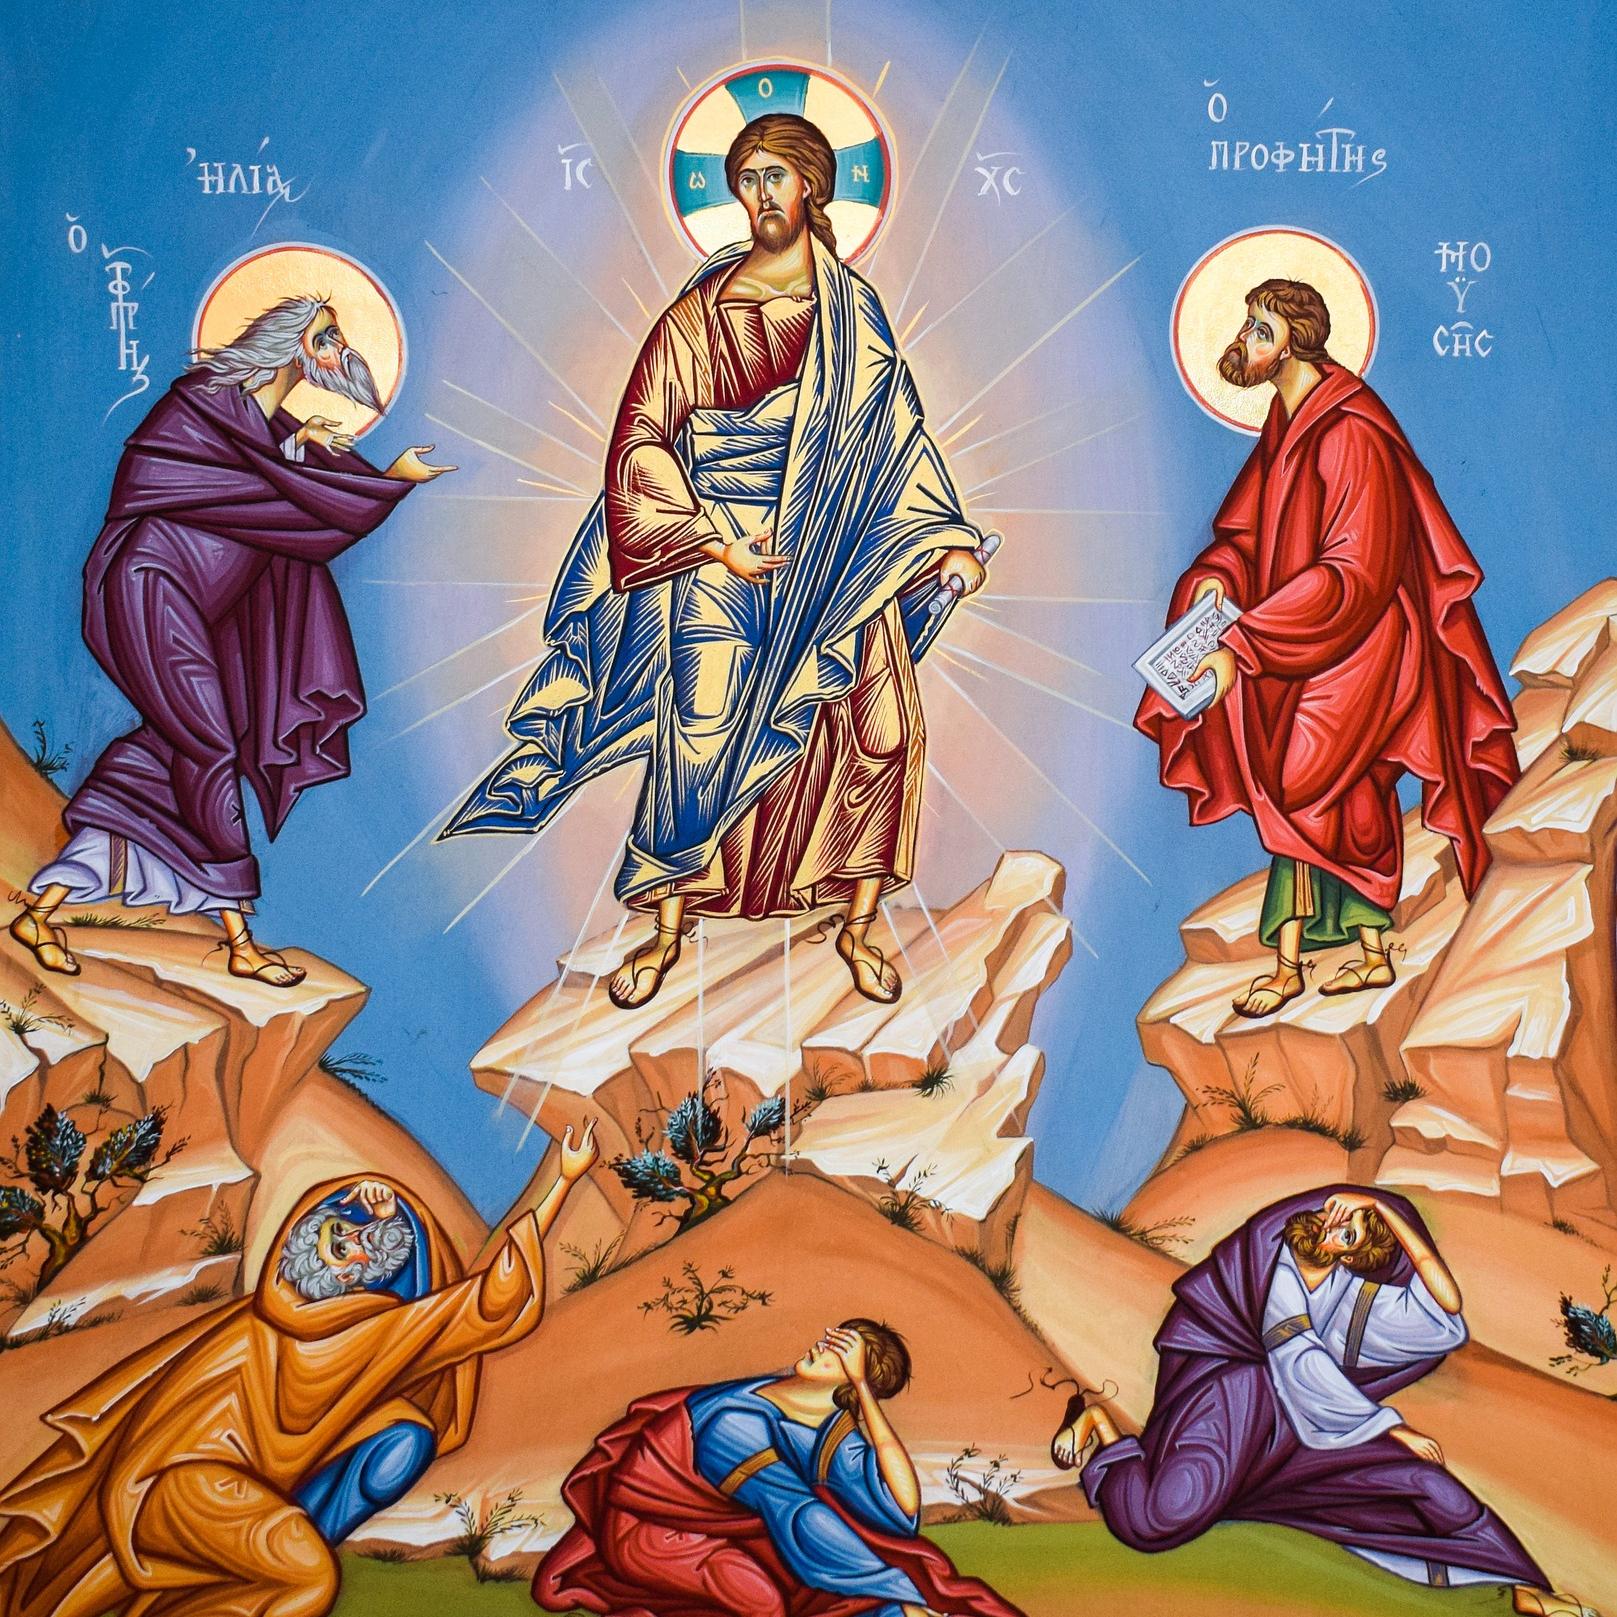 transfiguration-of-christ-g36e4b0df9_1920